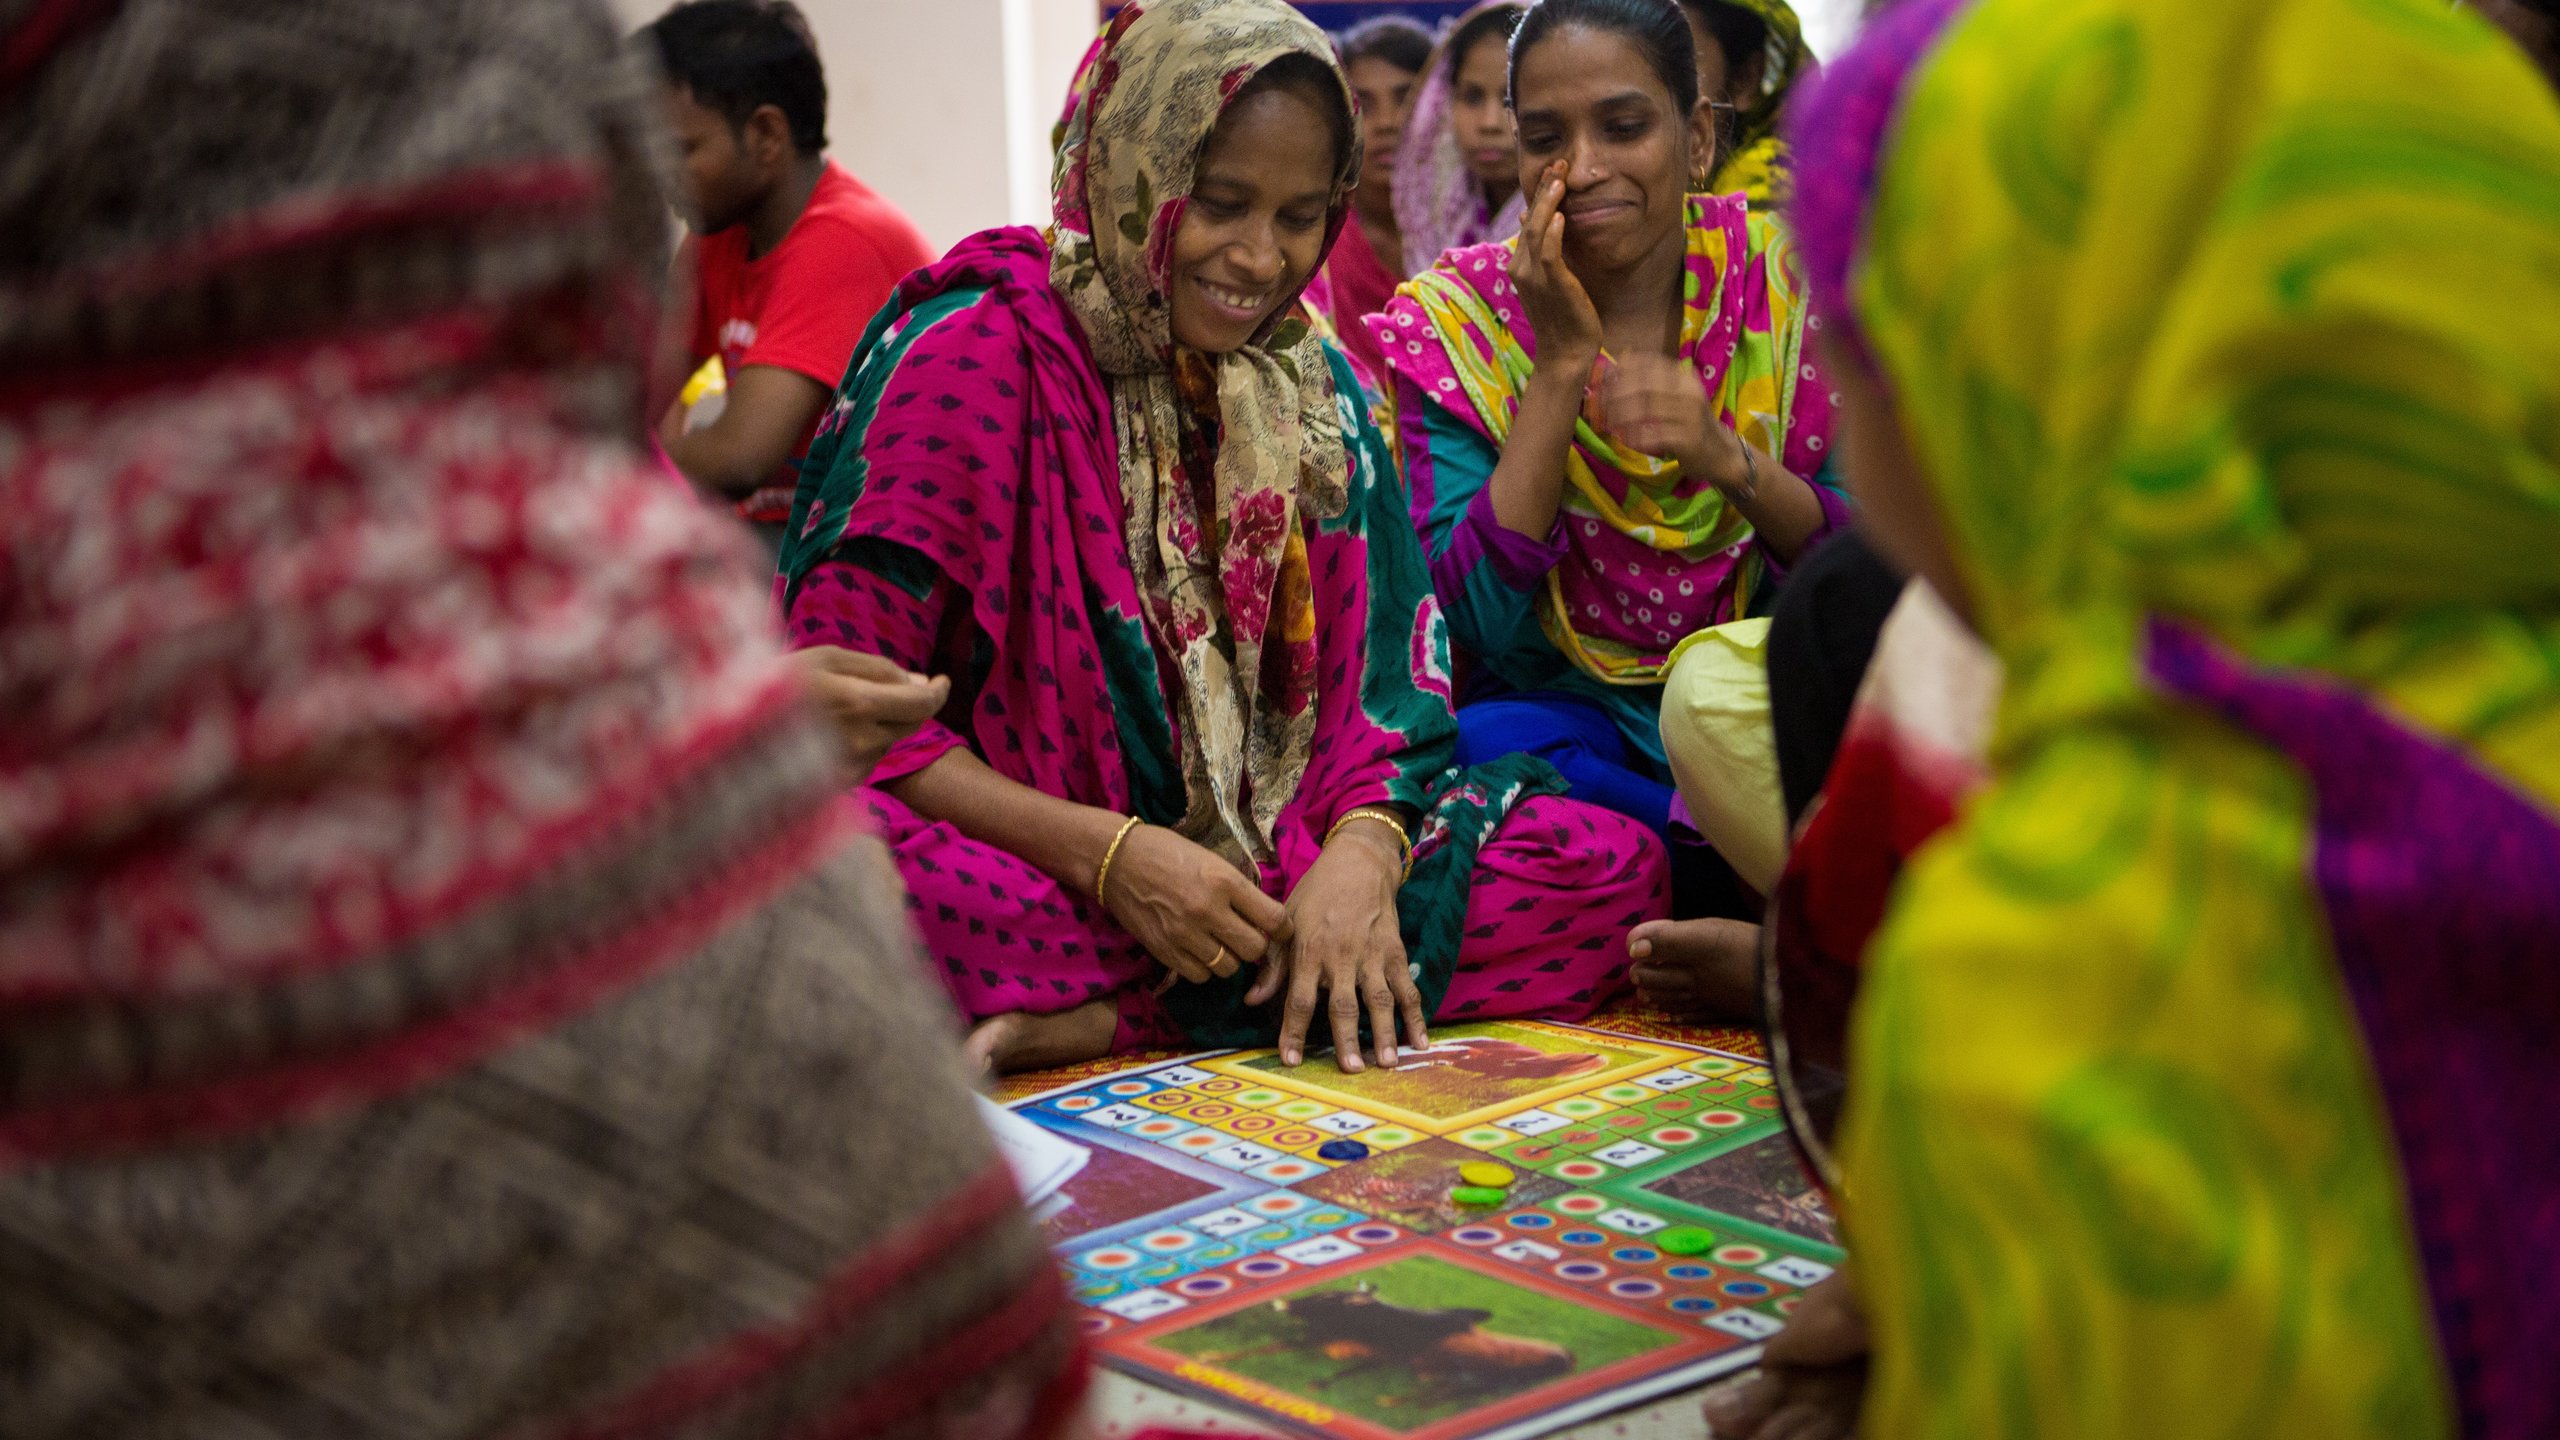 UP! + Community-based, worker training programme, Bangladesh